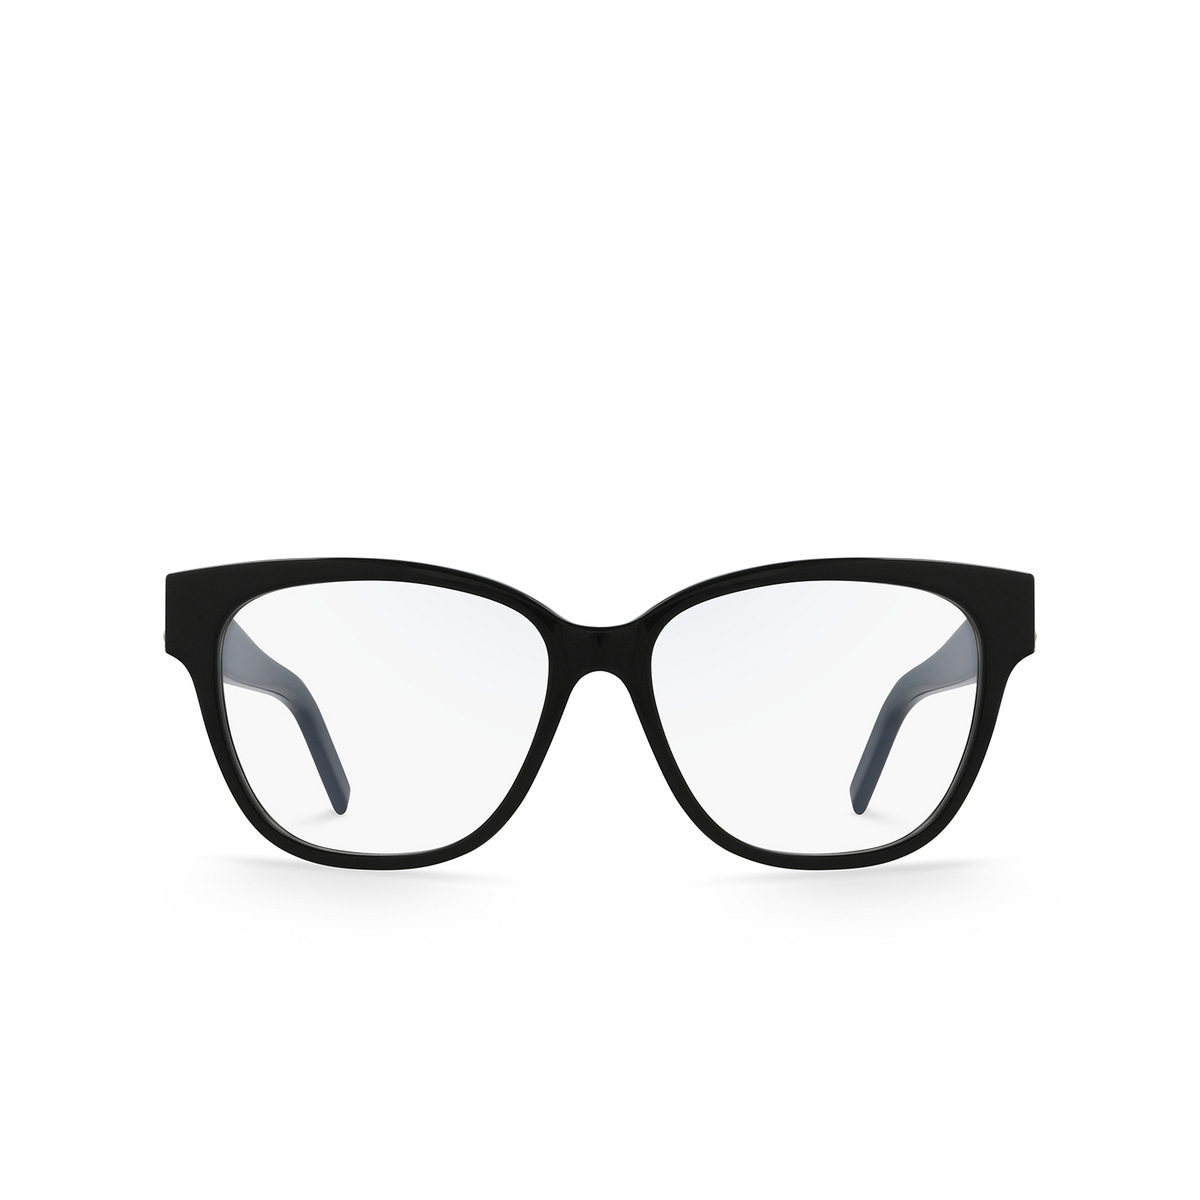 Saint Laurent® Square Eyeglasses: SL M33 color Black 003 - front view.